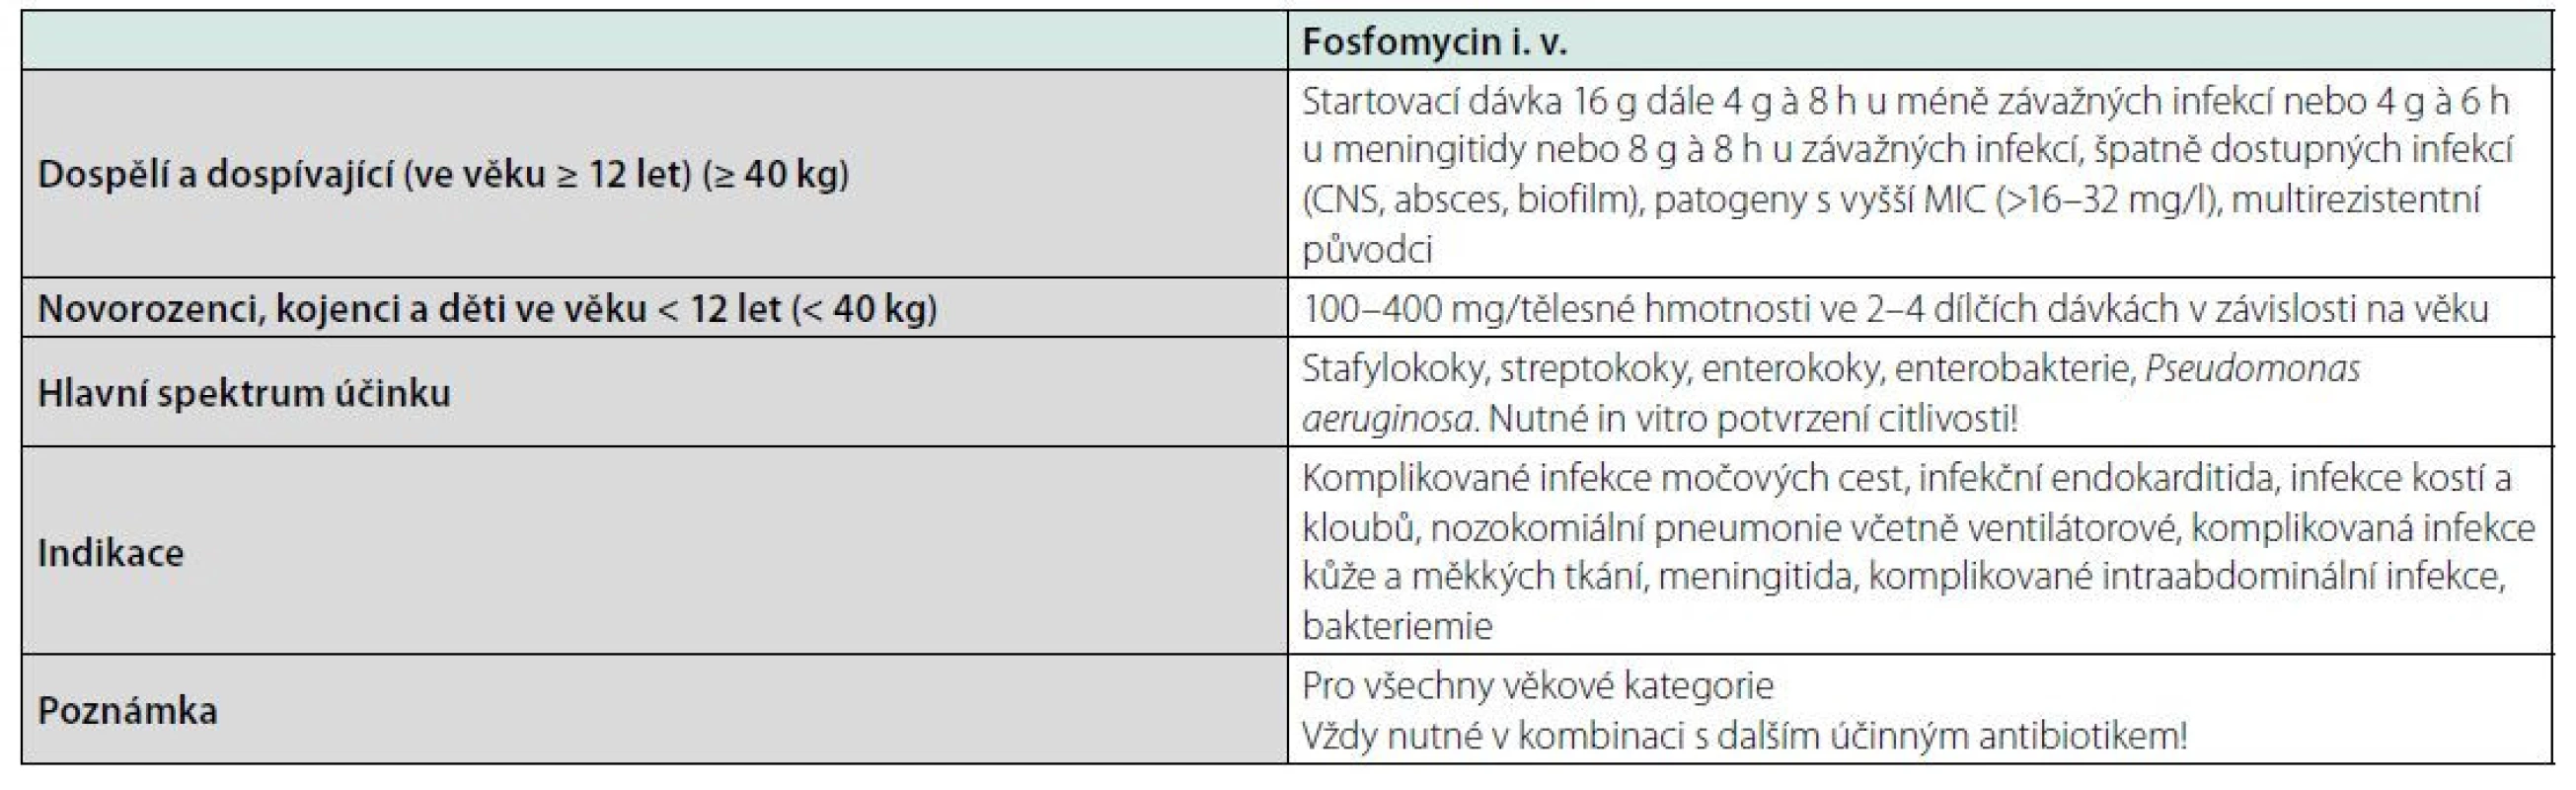 Základní charakteristika intravenózního fosfomycinu (13)